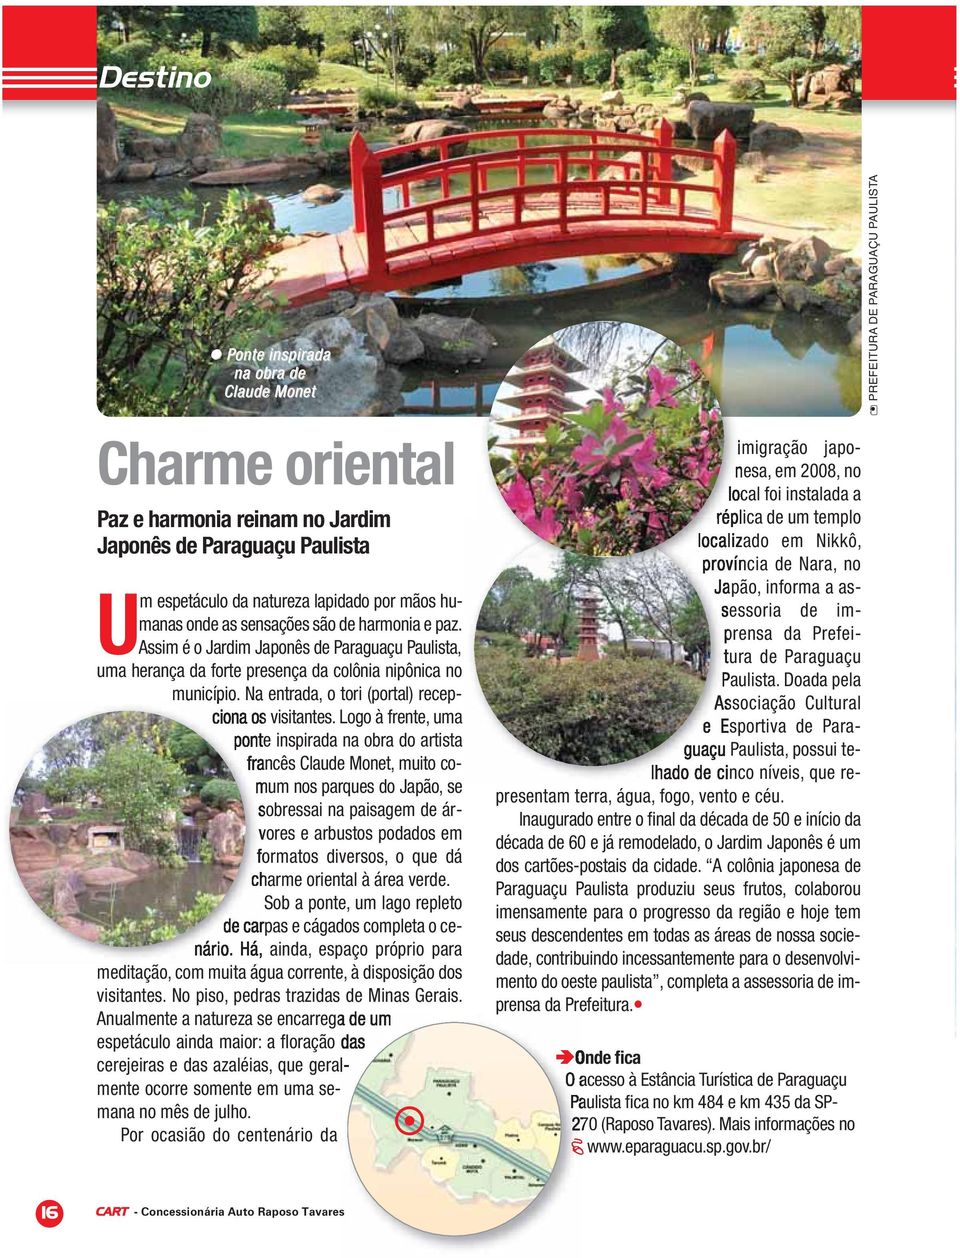 Logo à frente, uma ponte inspirada na obra do artista francês Claude Monet, muito comum nos parques do Japão, se sobressai na paisagem de árvores e arbustos podados em formatos diversos, o que dá